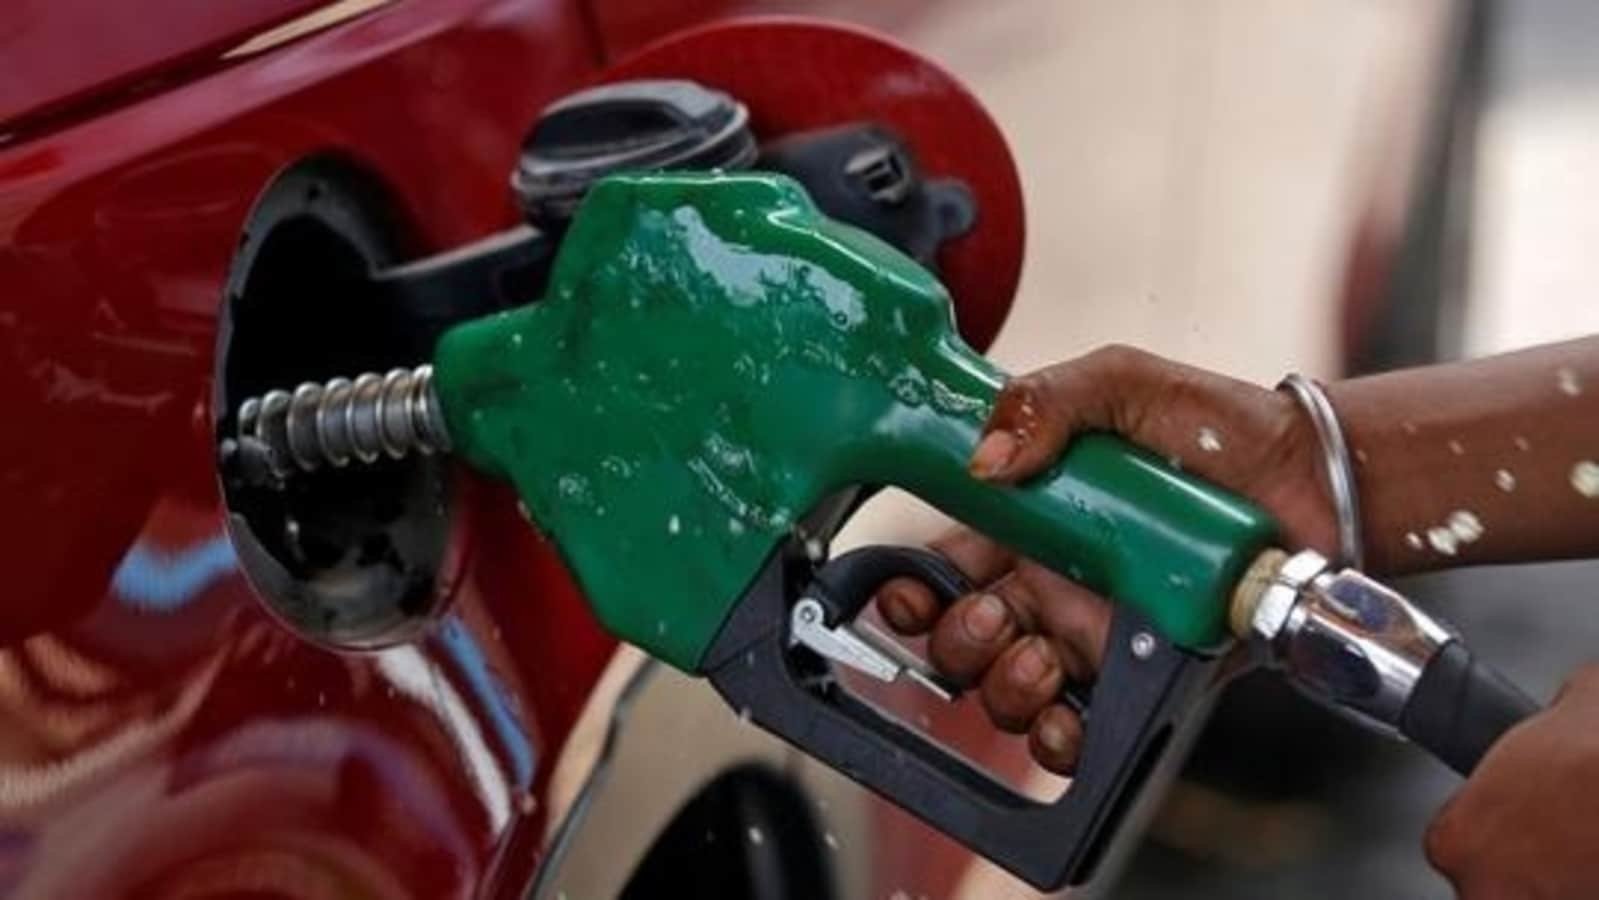 20 जून को पेट्रोल, डीजल की कीमतें: अपने शहर में नवीनतम दरों की जांच करें